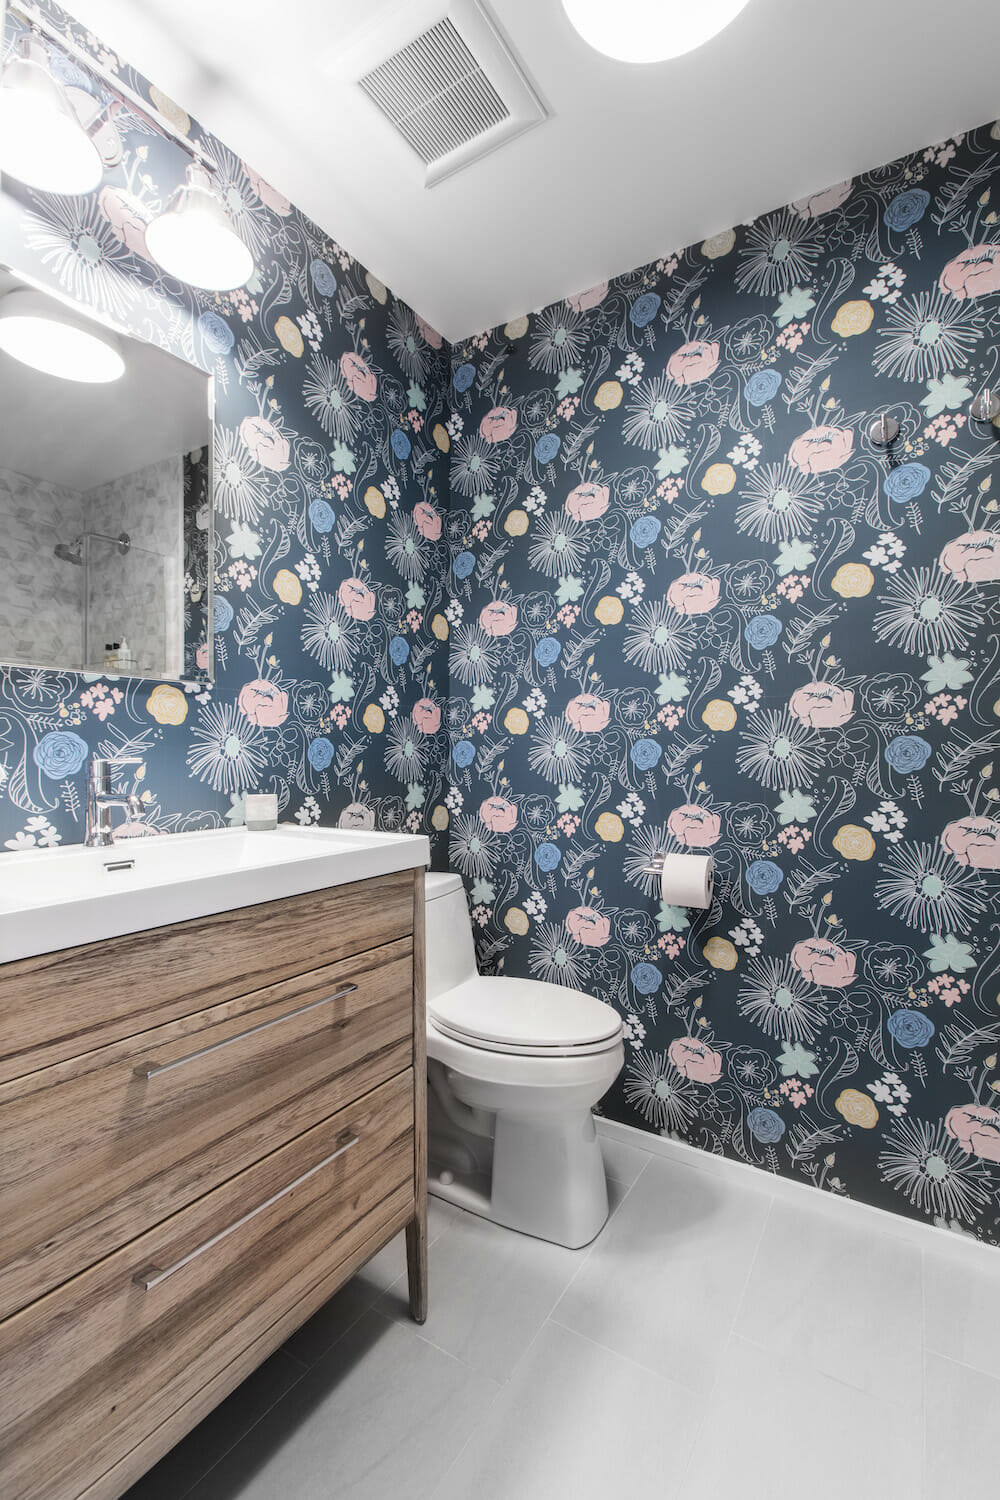 Wallpaper in Bathrooms: 10 Stylish Renovation Ideas | Sweeten